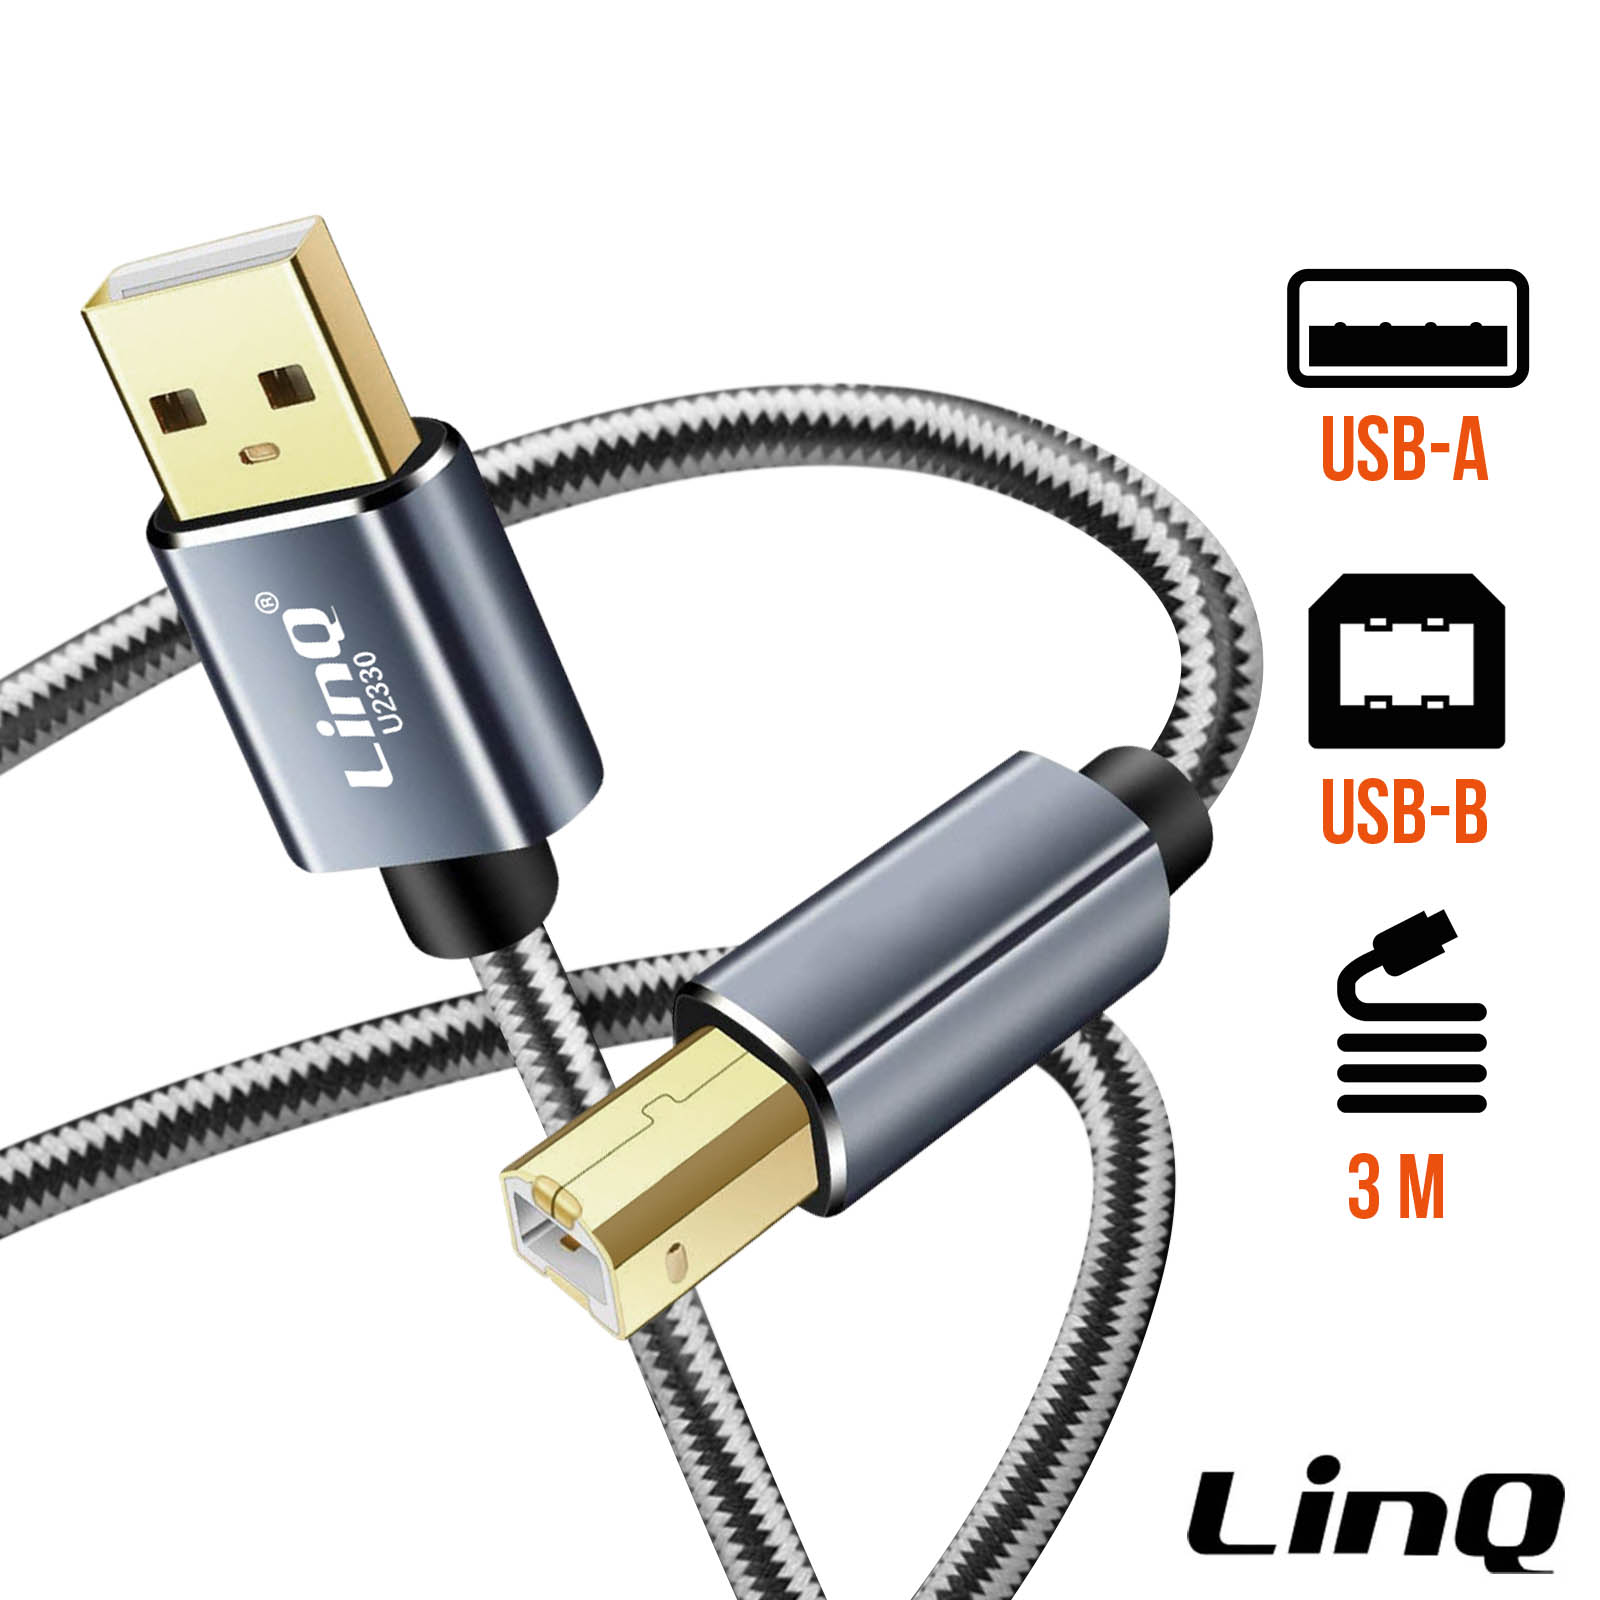 Câble USB de couleur blanc et d'une longueur de 2 mètres (A/B)